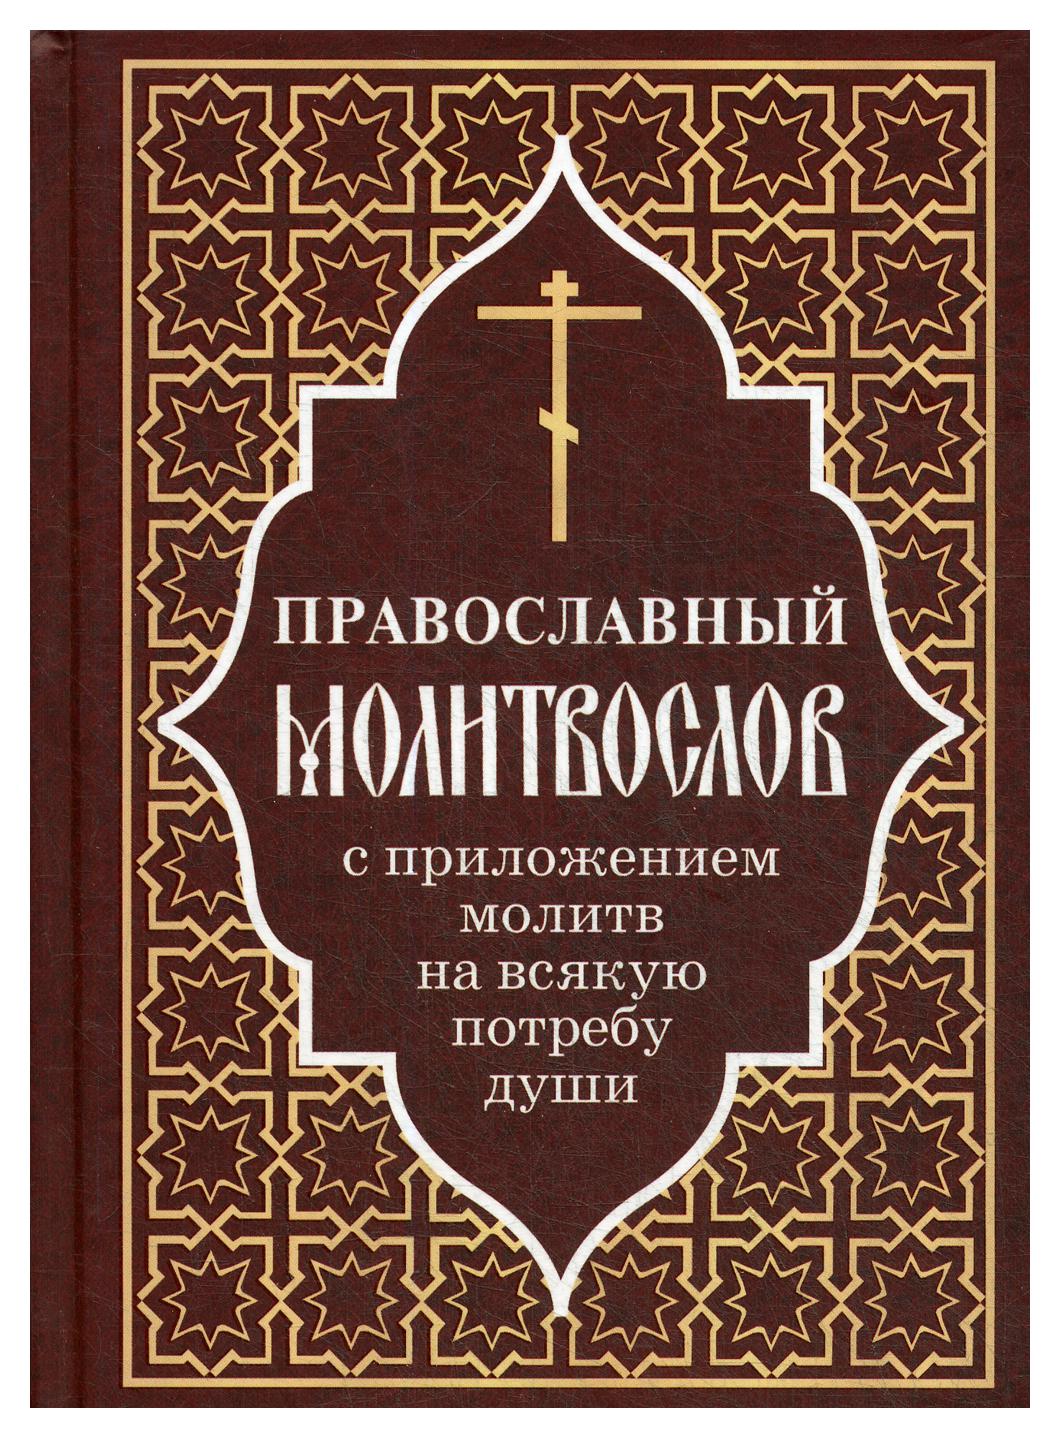 Православный молитвослов с приложением молитв на всякую потребу души - фото №1